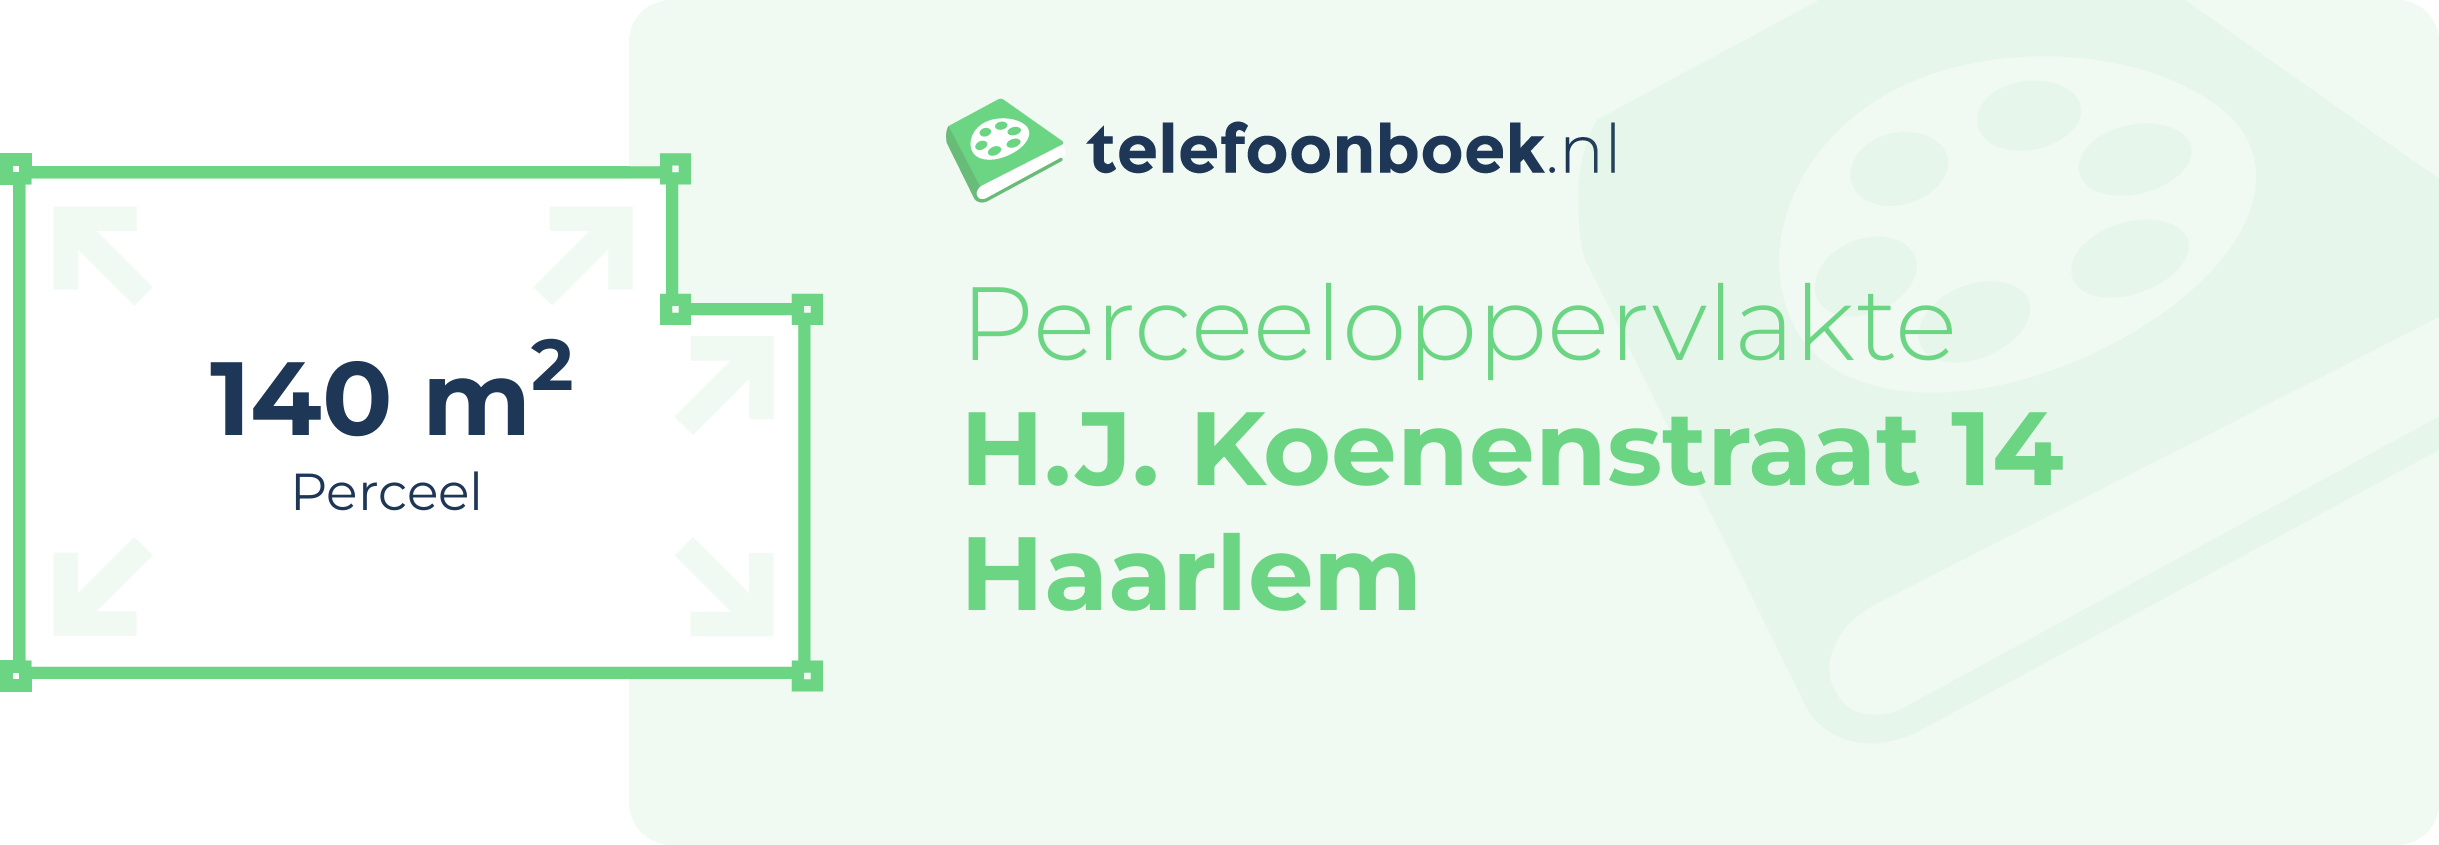 Perceeloppervlakte H.J. Koenenstraat 14 Haarlem